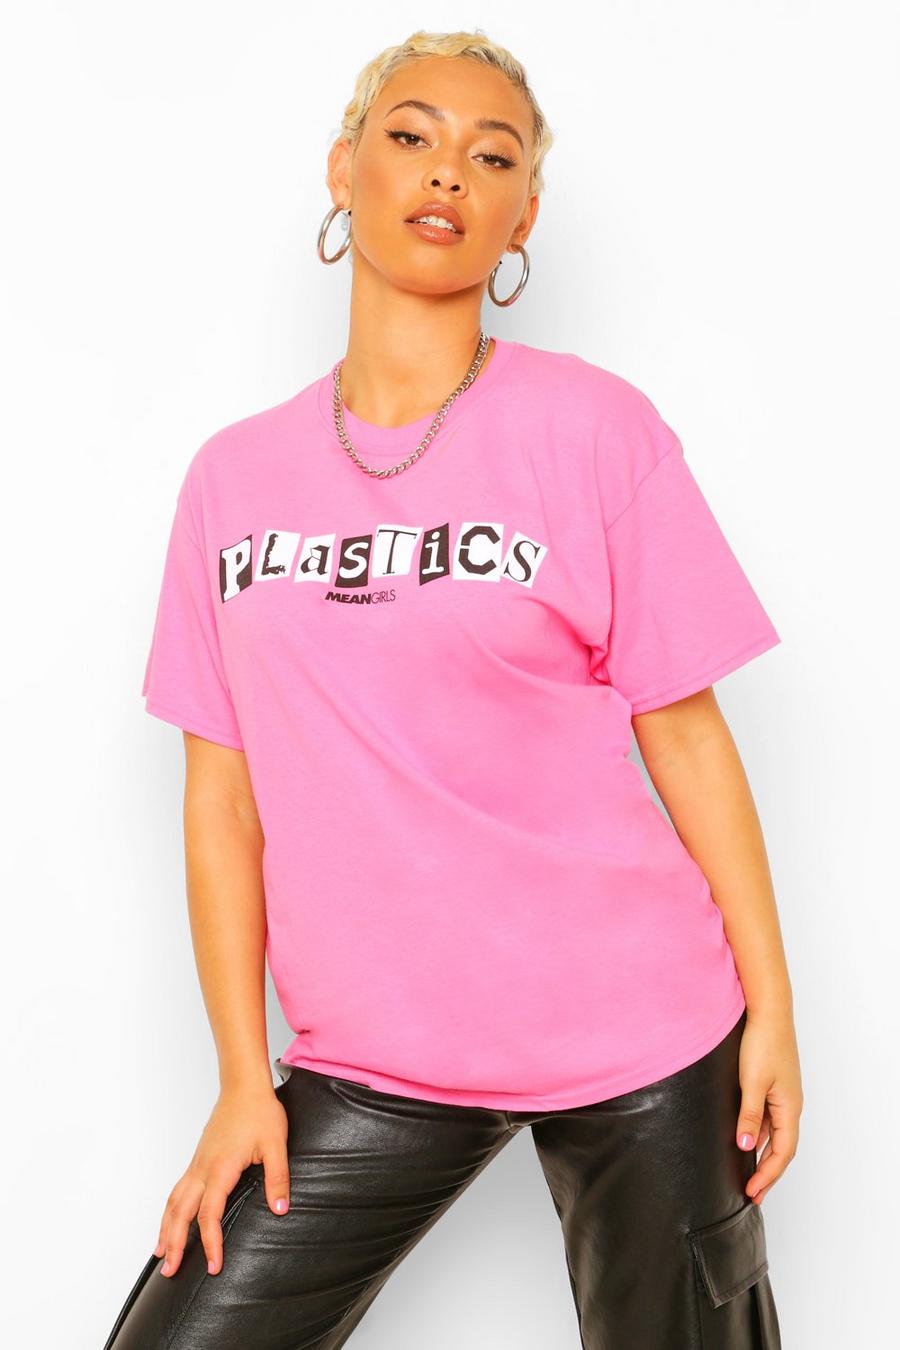 T-shirt officiel "Plastics Mean Girls" image number 1